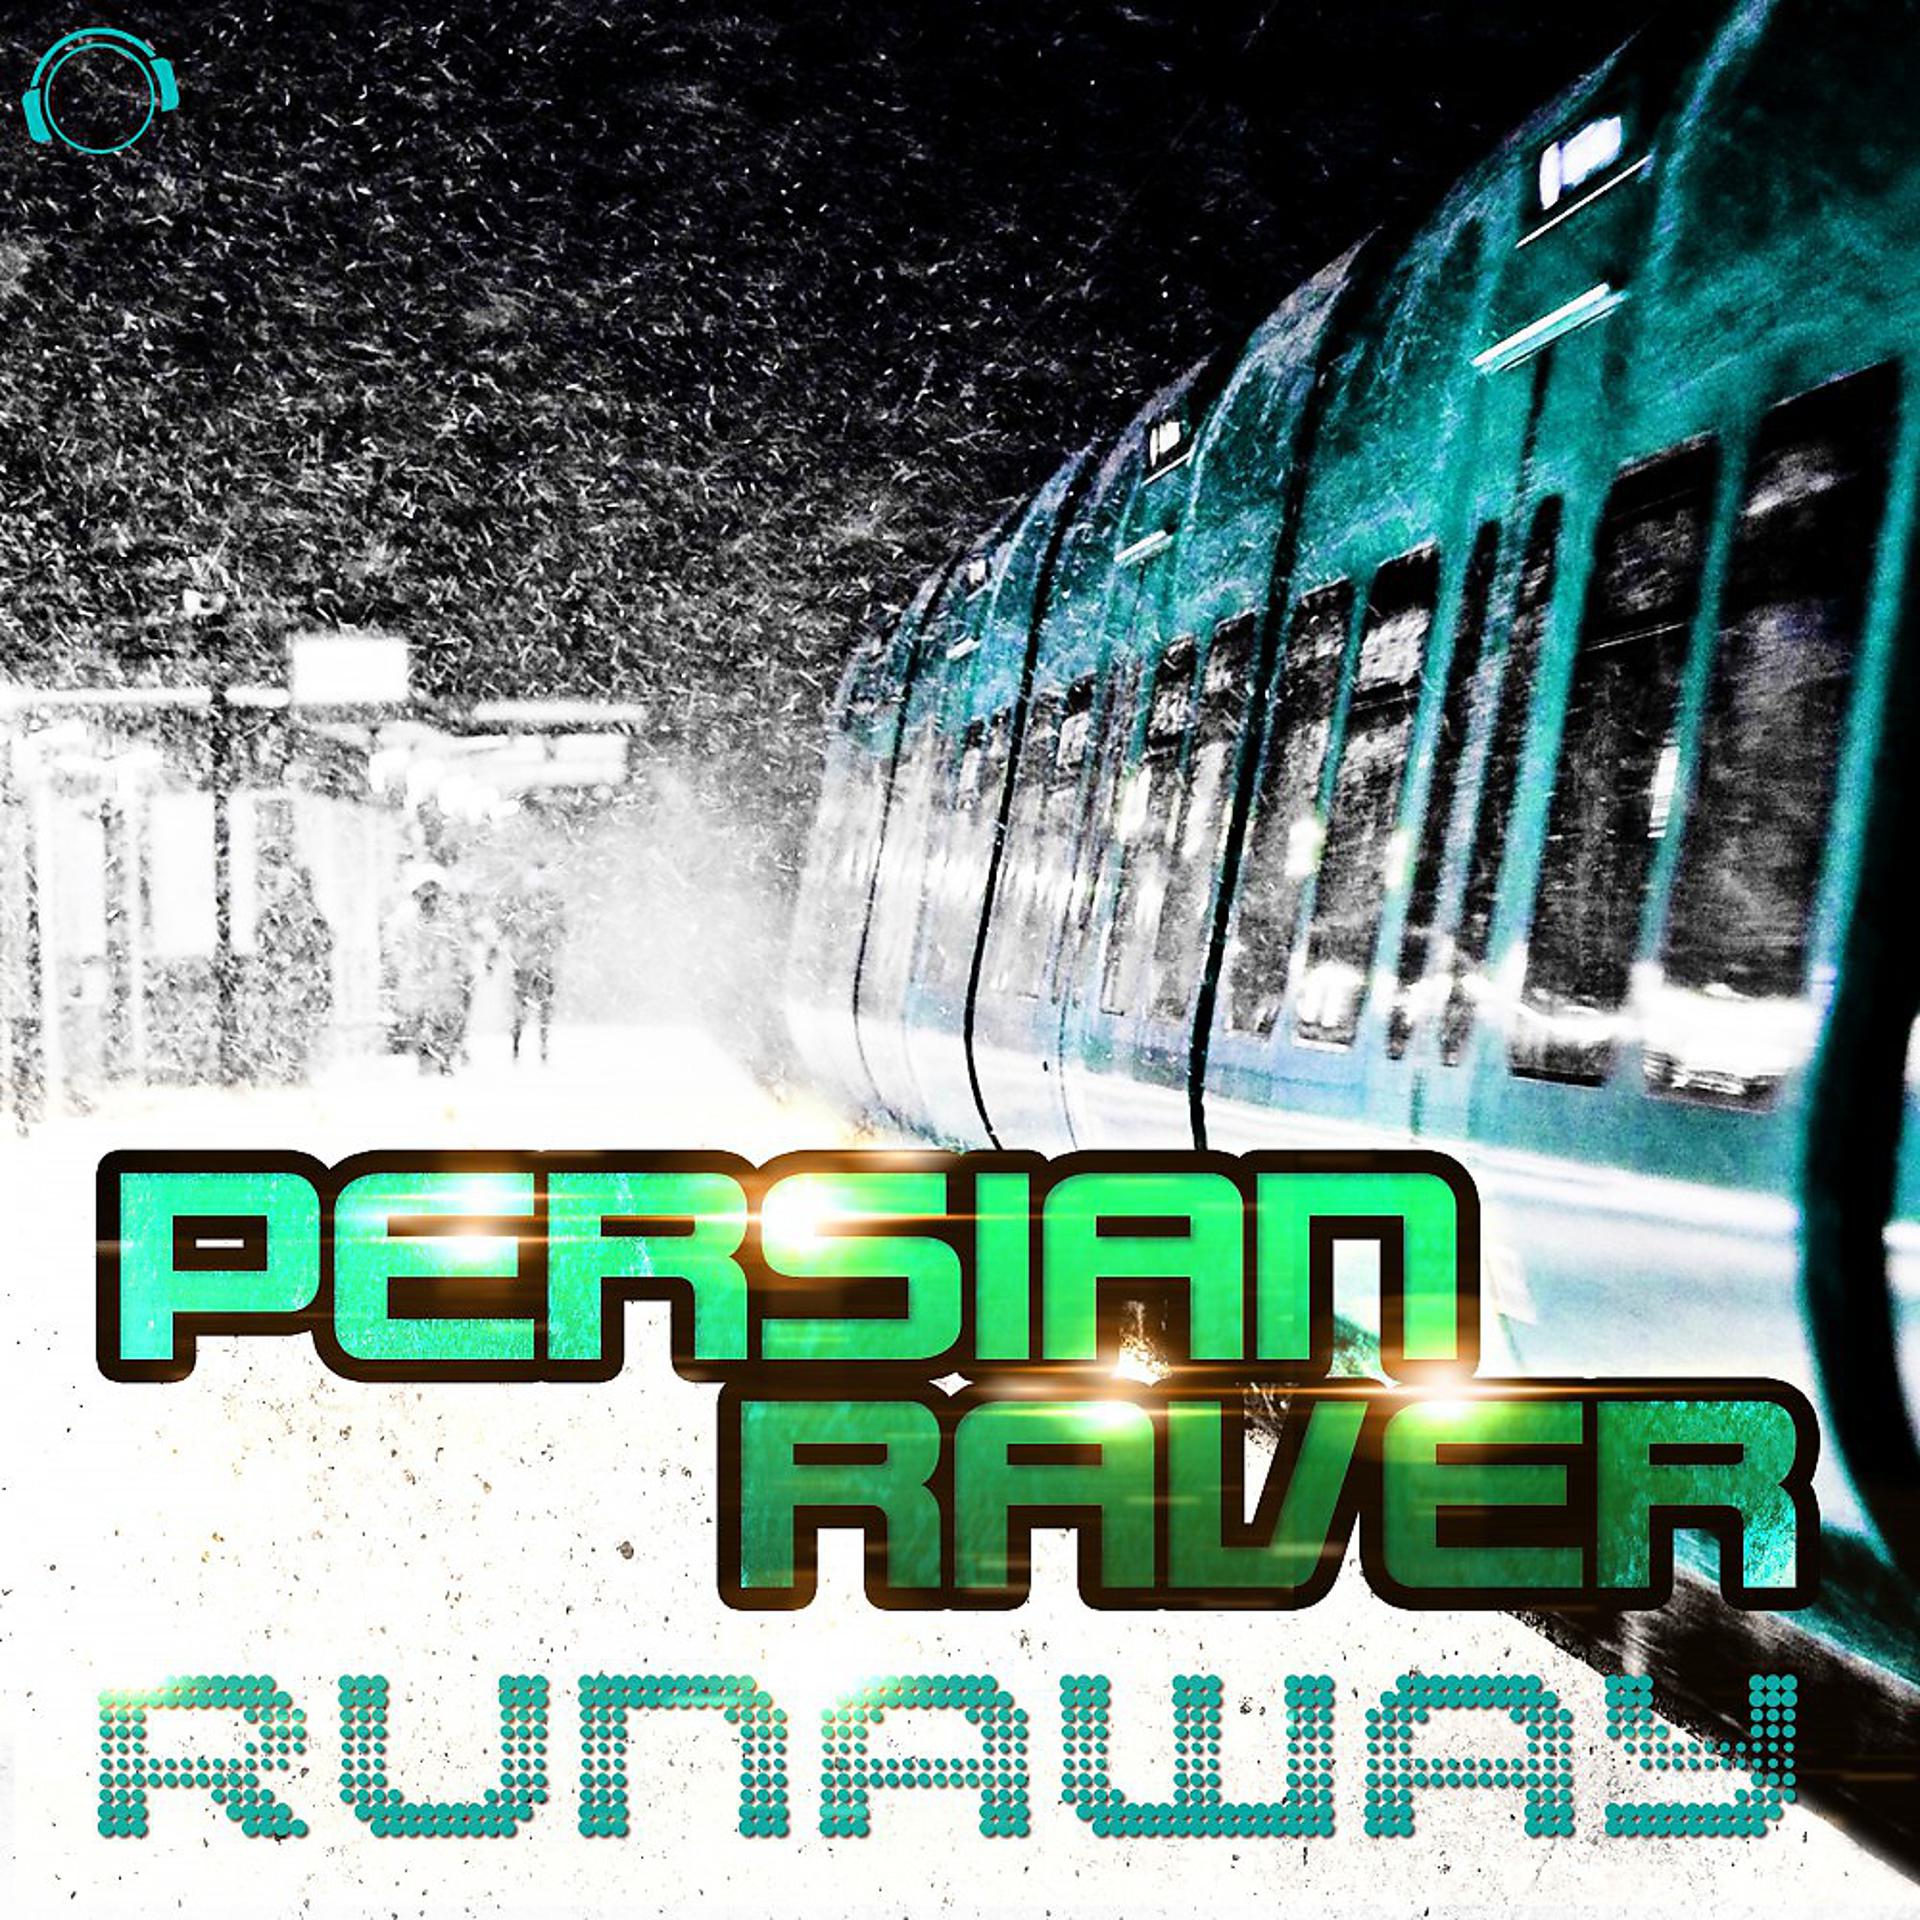 Постер альбома Runaway (Remixes)